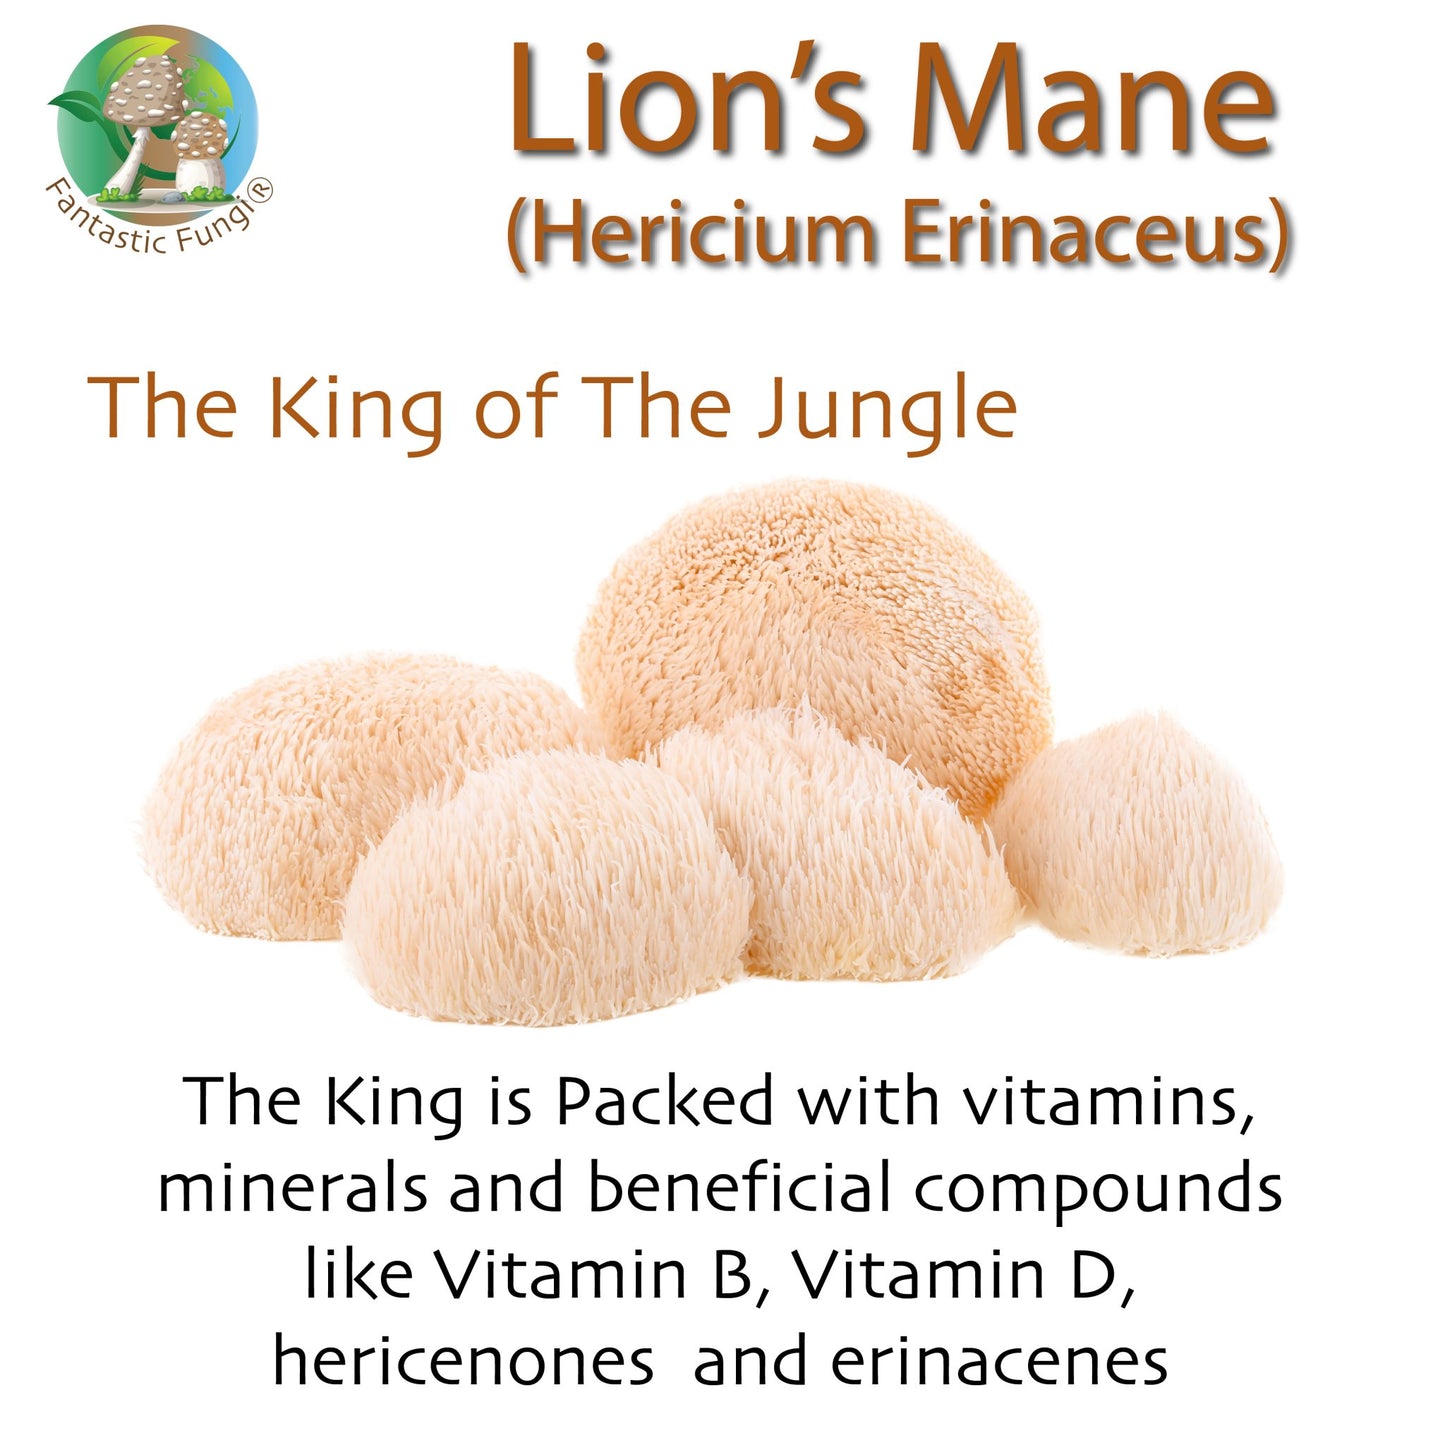 Organic Lion’s Mane (Hericium Erinaceus) Mushroom extract powder / Extrait d’hydne hérisson (Hericium Erinaceus) biologique en poudre - Ecogenya